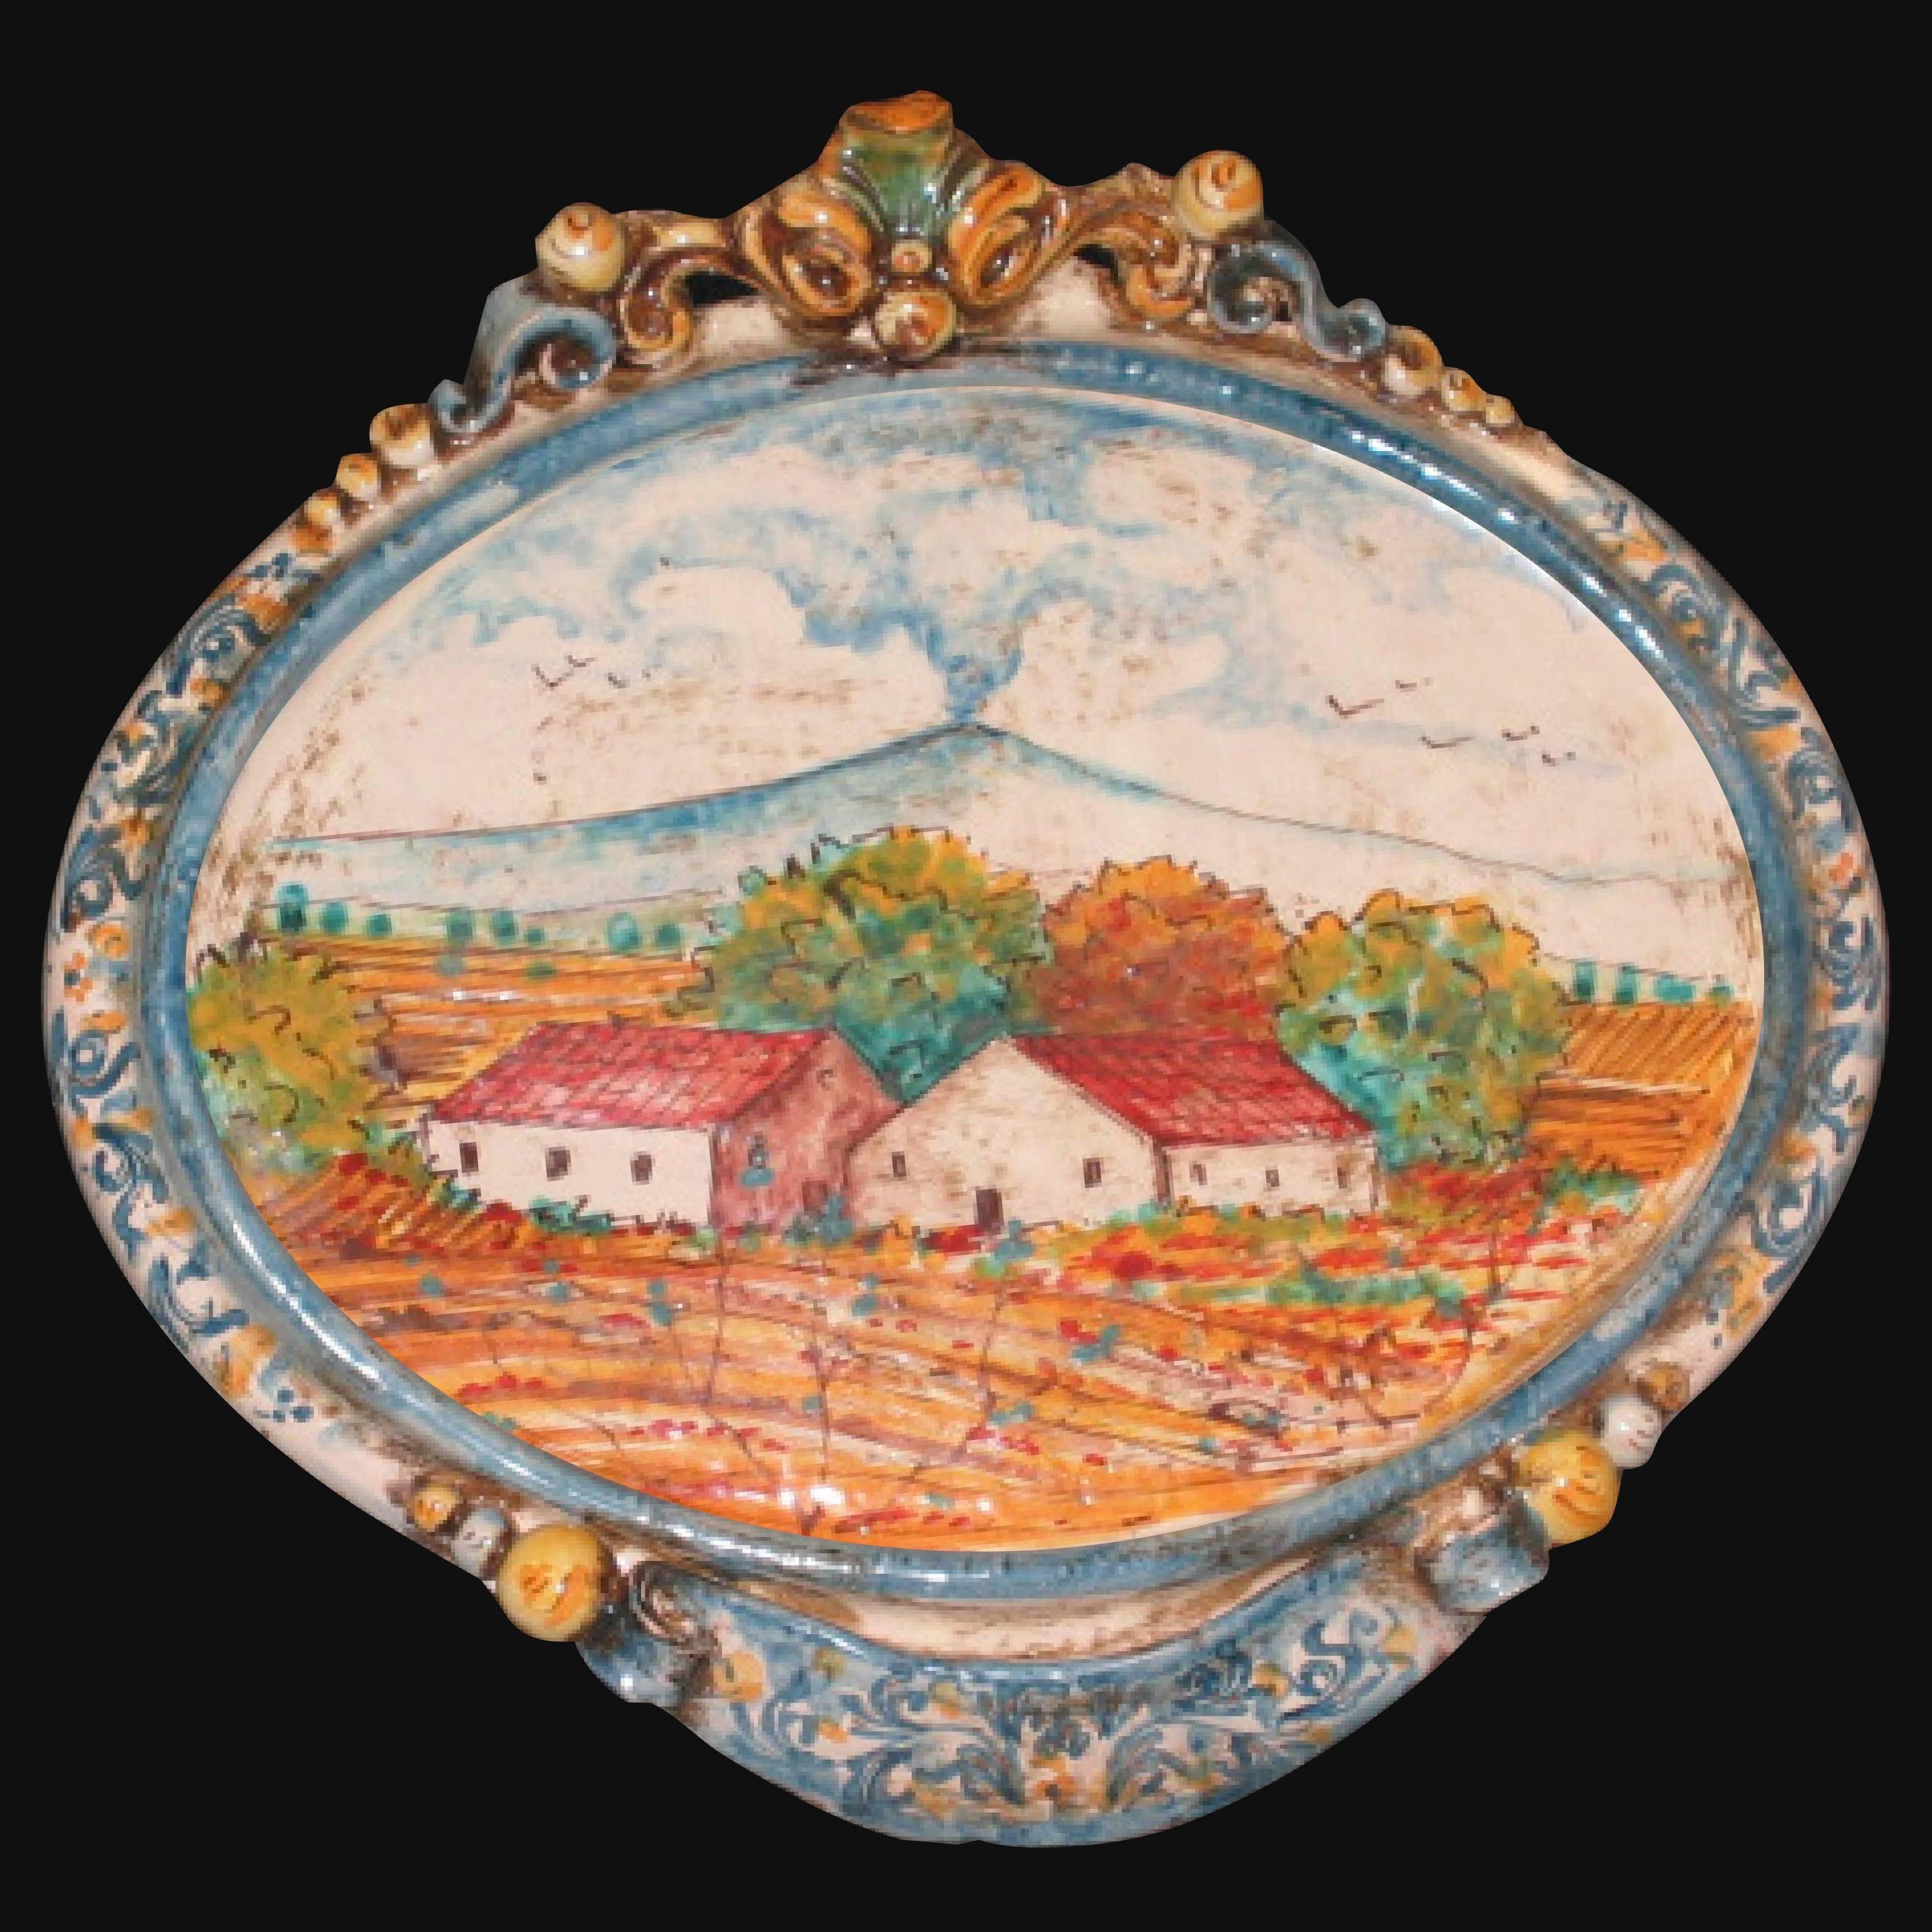 Ovale orizzontale medio con paesaggio etna 23x25 blu/arancio in Ceramica Artistica di Caltagirone